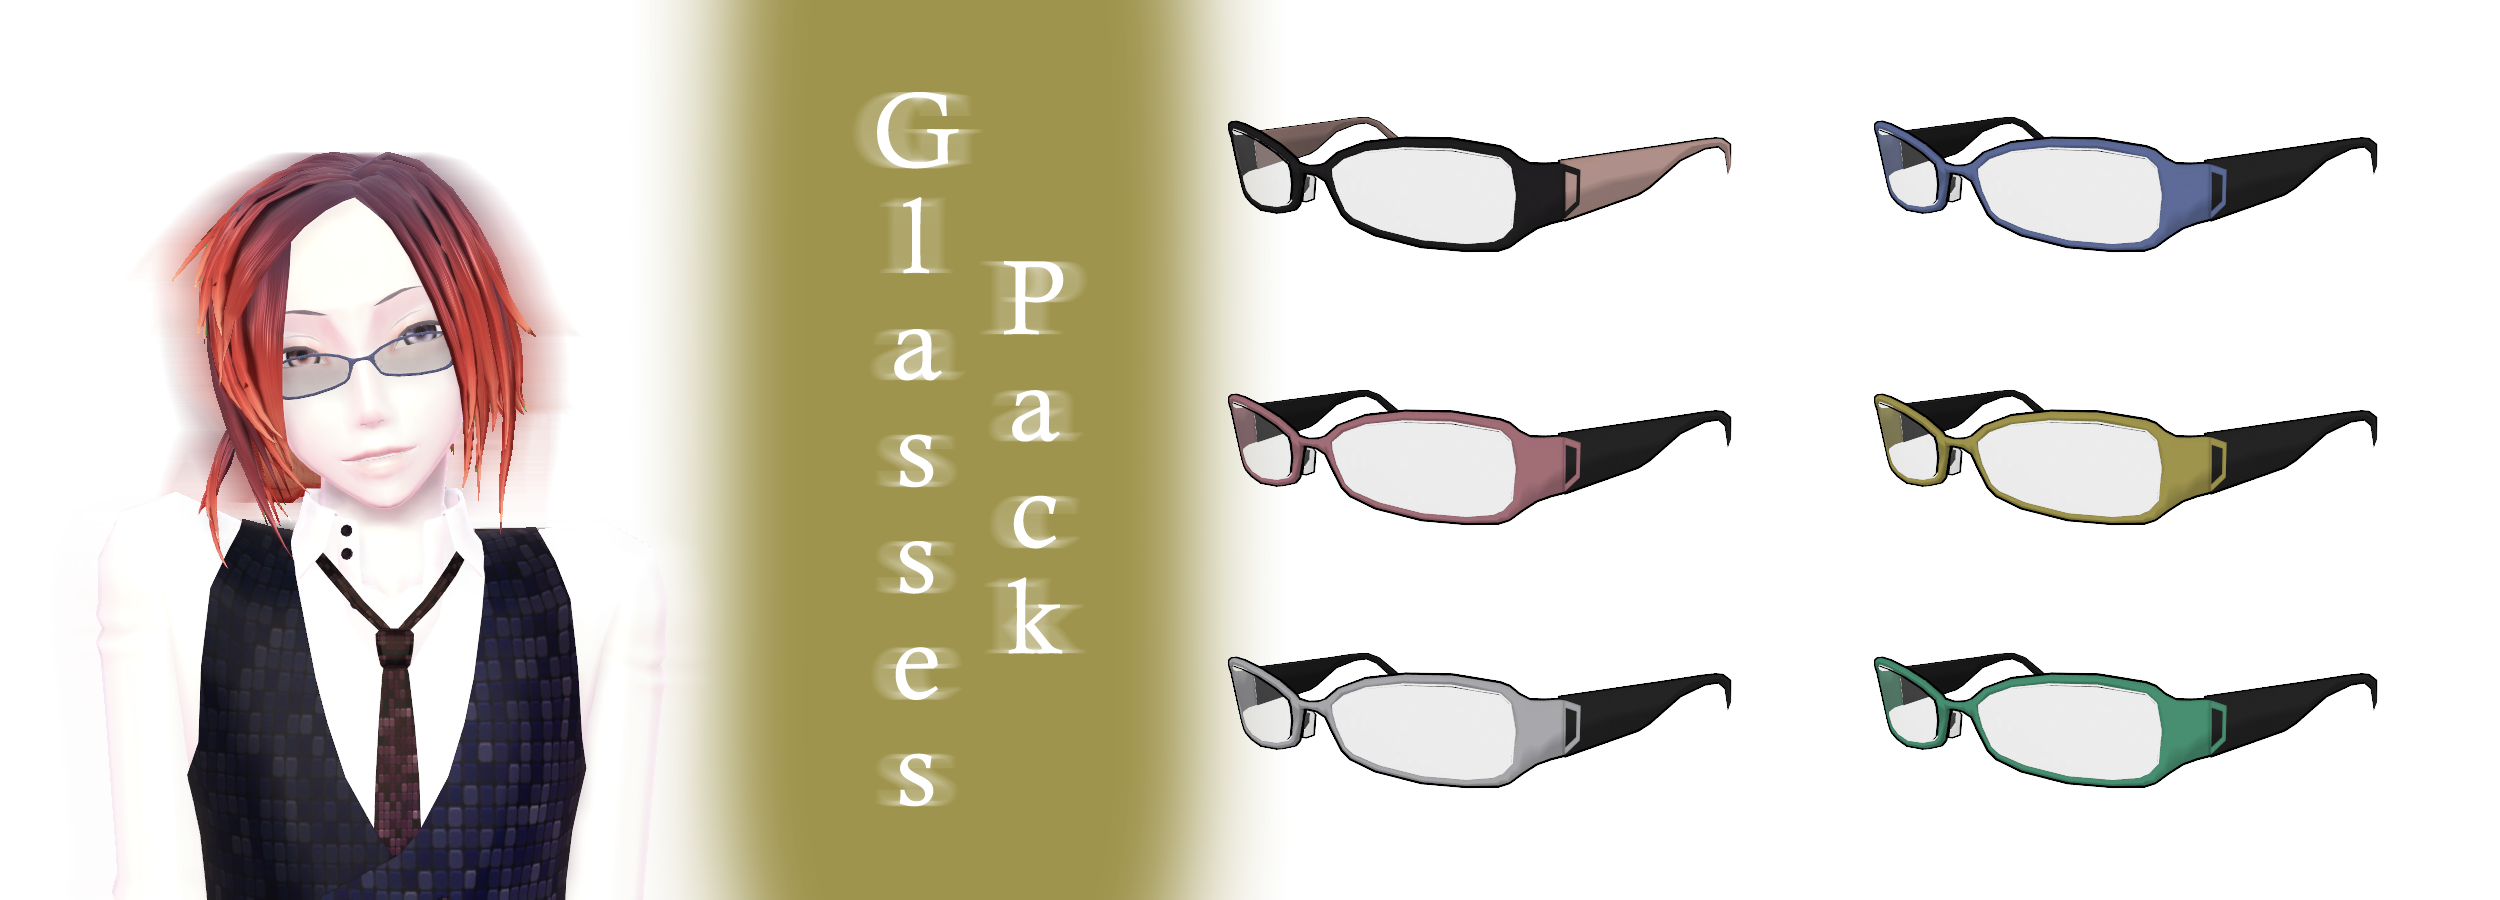 [mmd] Glasses Pack 3 Dl By Joanagnes On Deviantart